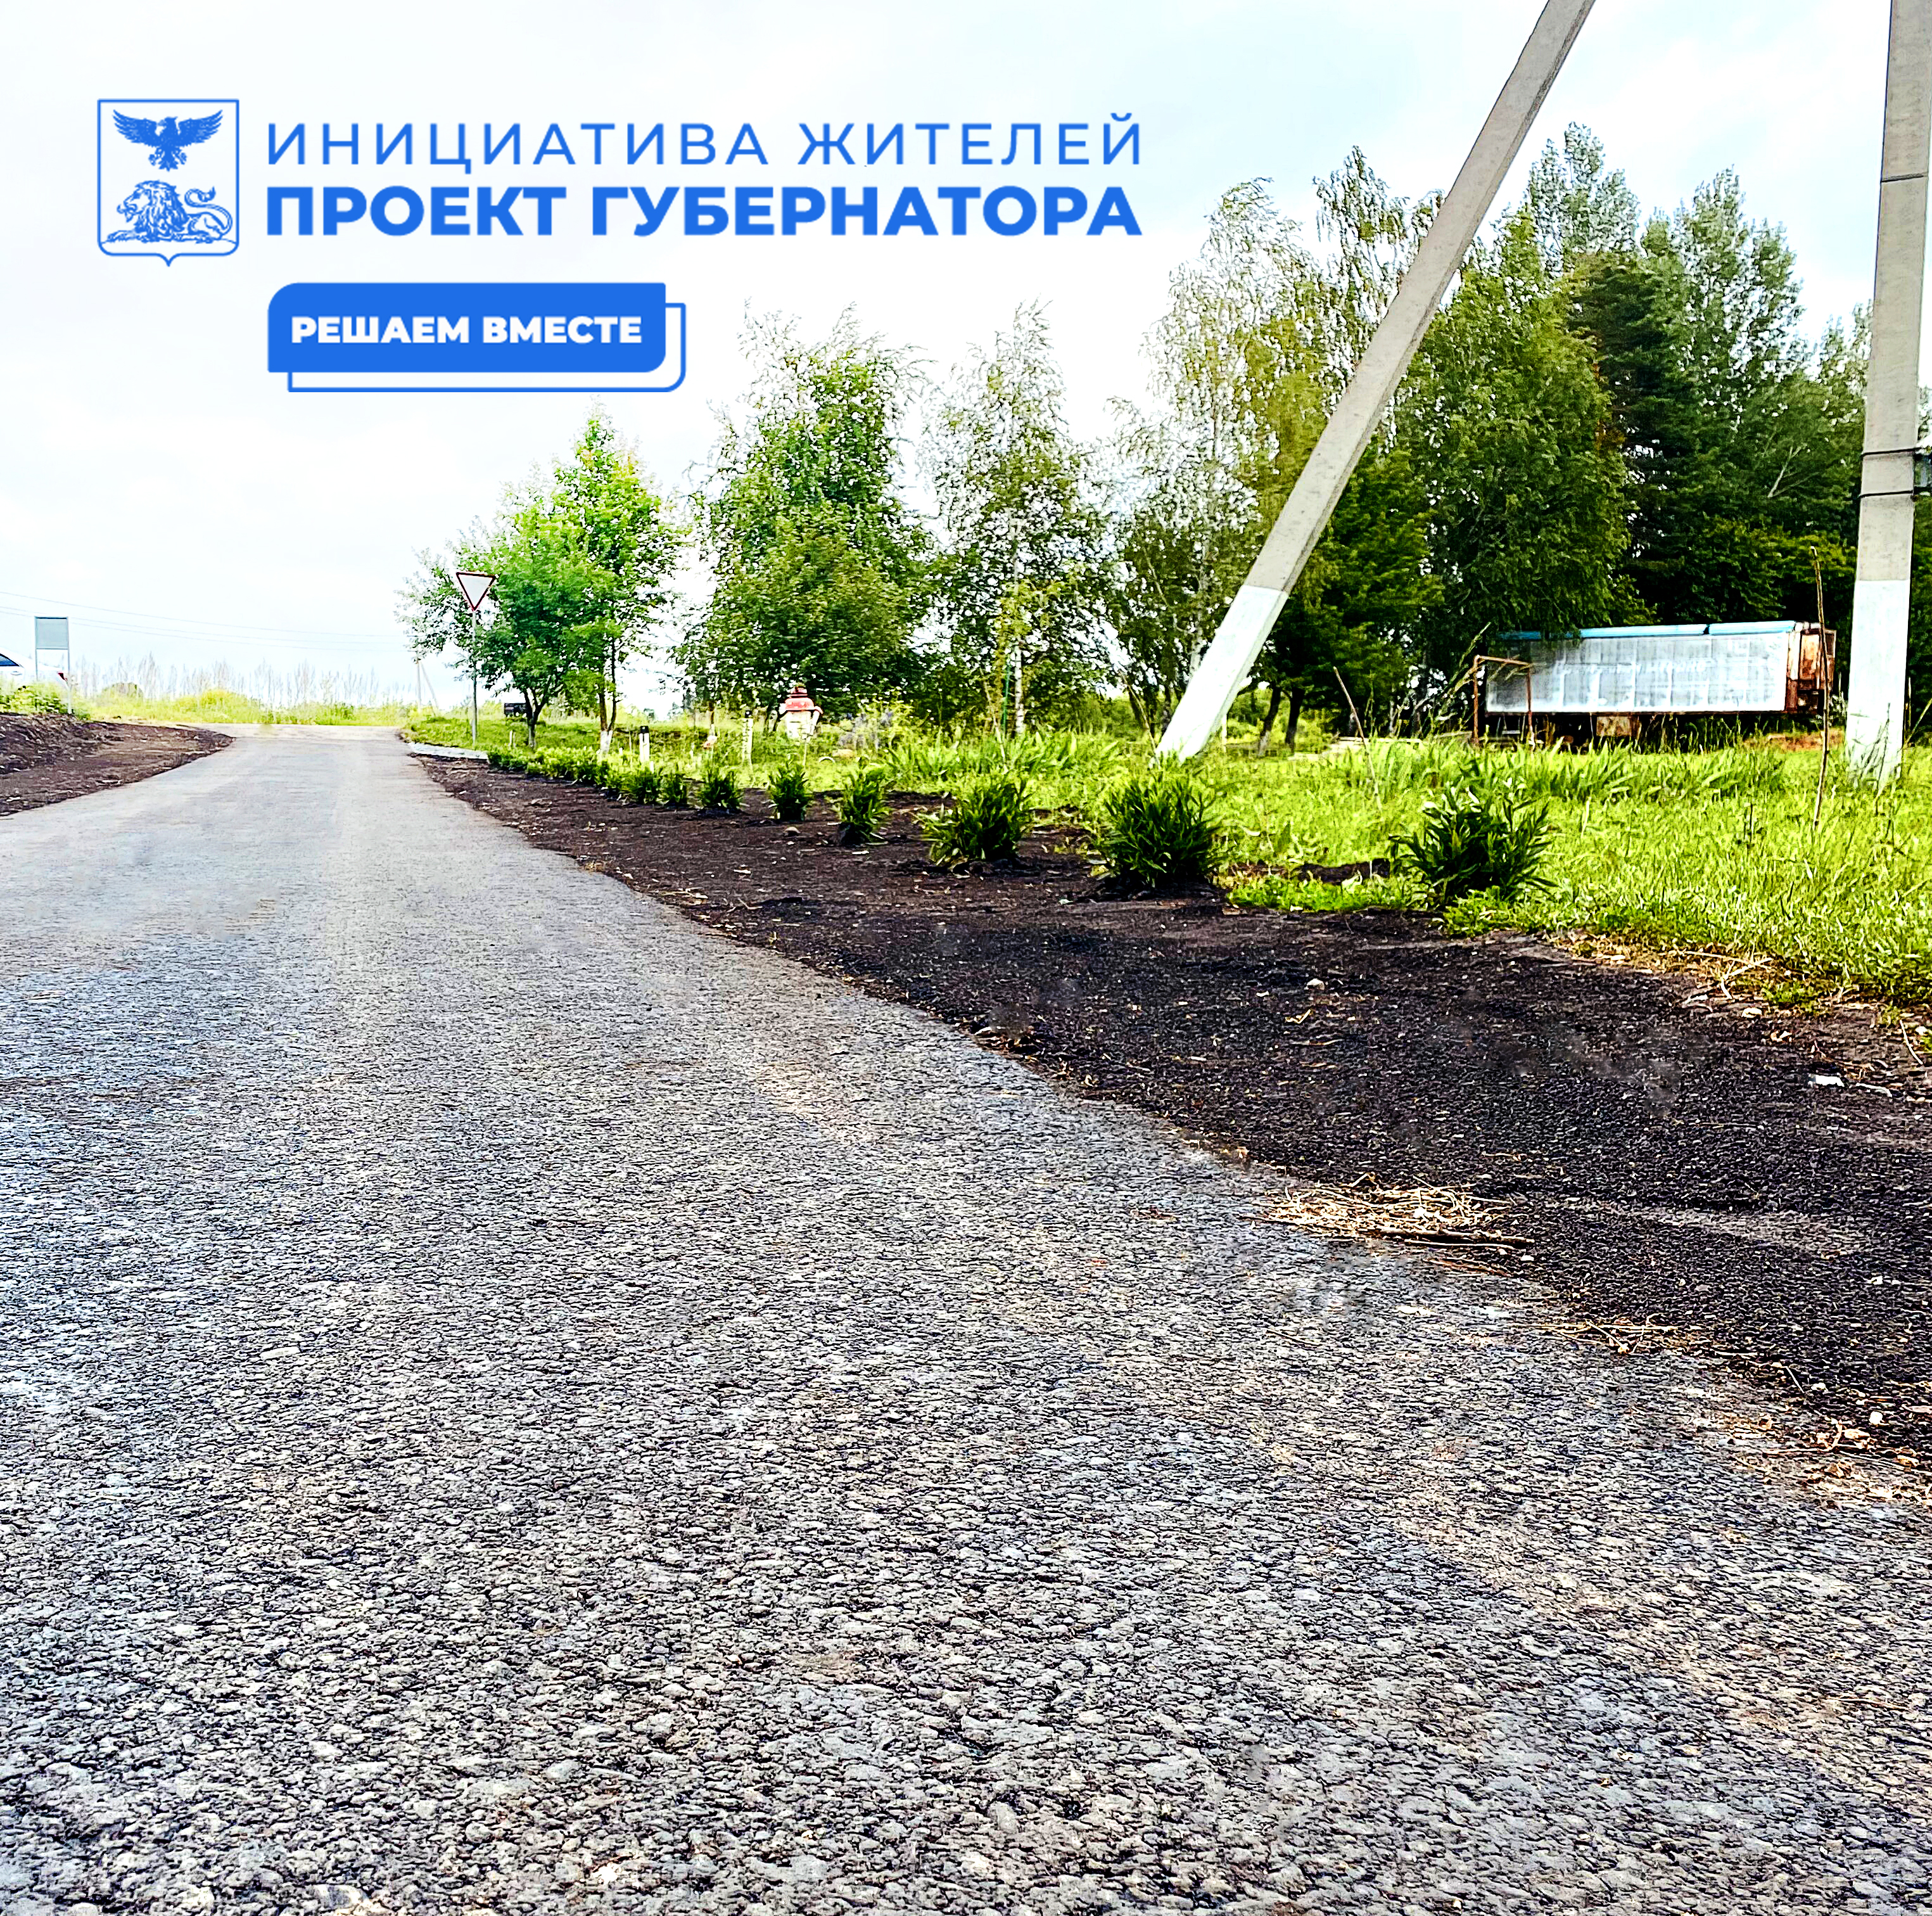 В селе Алексеевка Корочанского района завершено строительство дороги по улице Кайдашка, протяжённостью 320 м